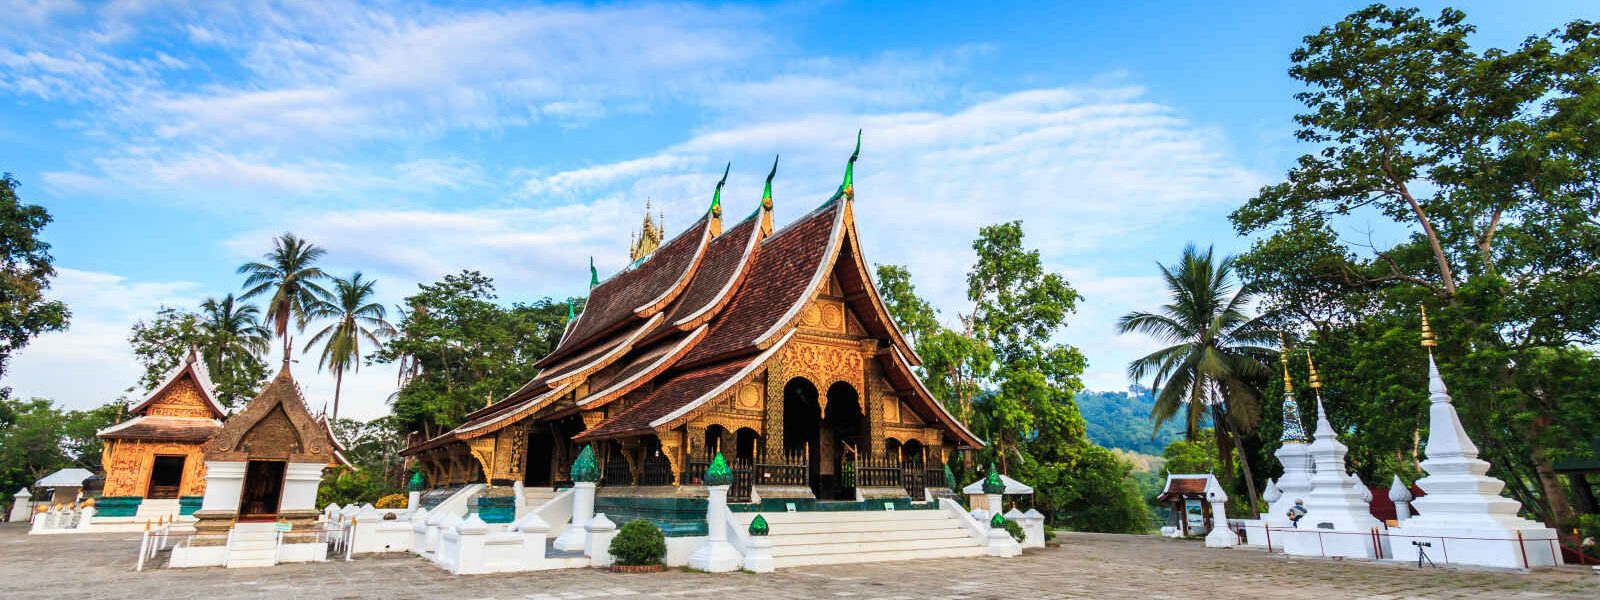 Wat Xieng Thong, Luang Prabang, Thailande